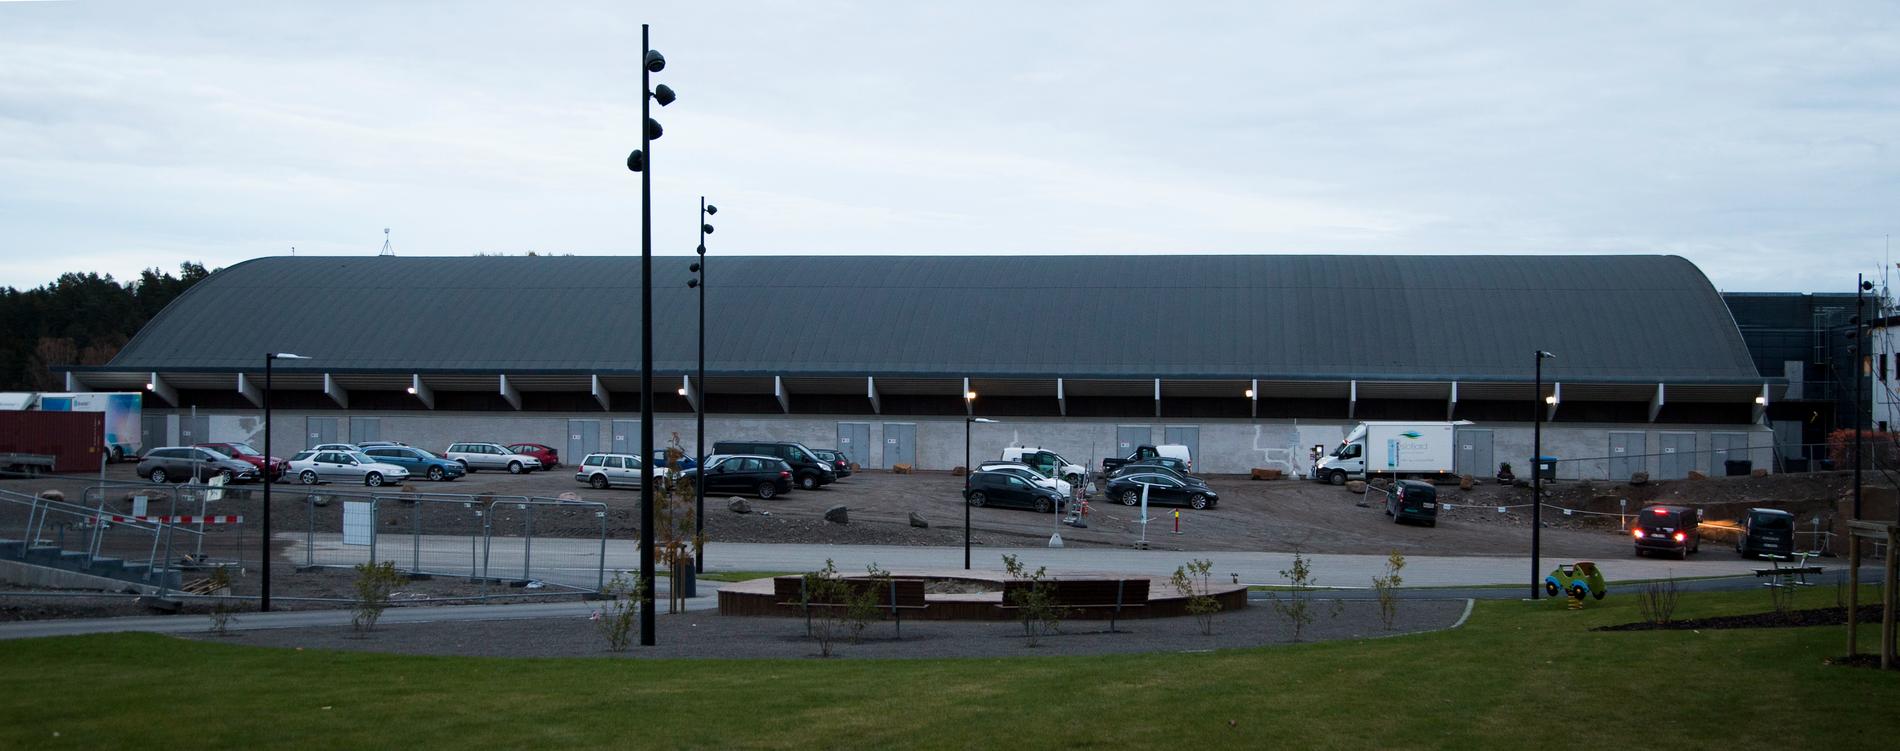 Oslofjorden Arena.